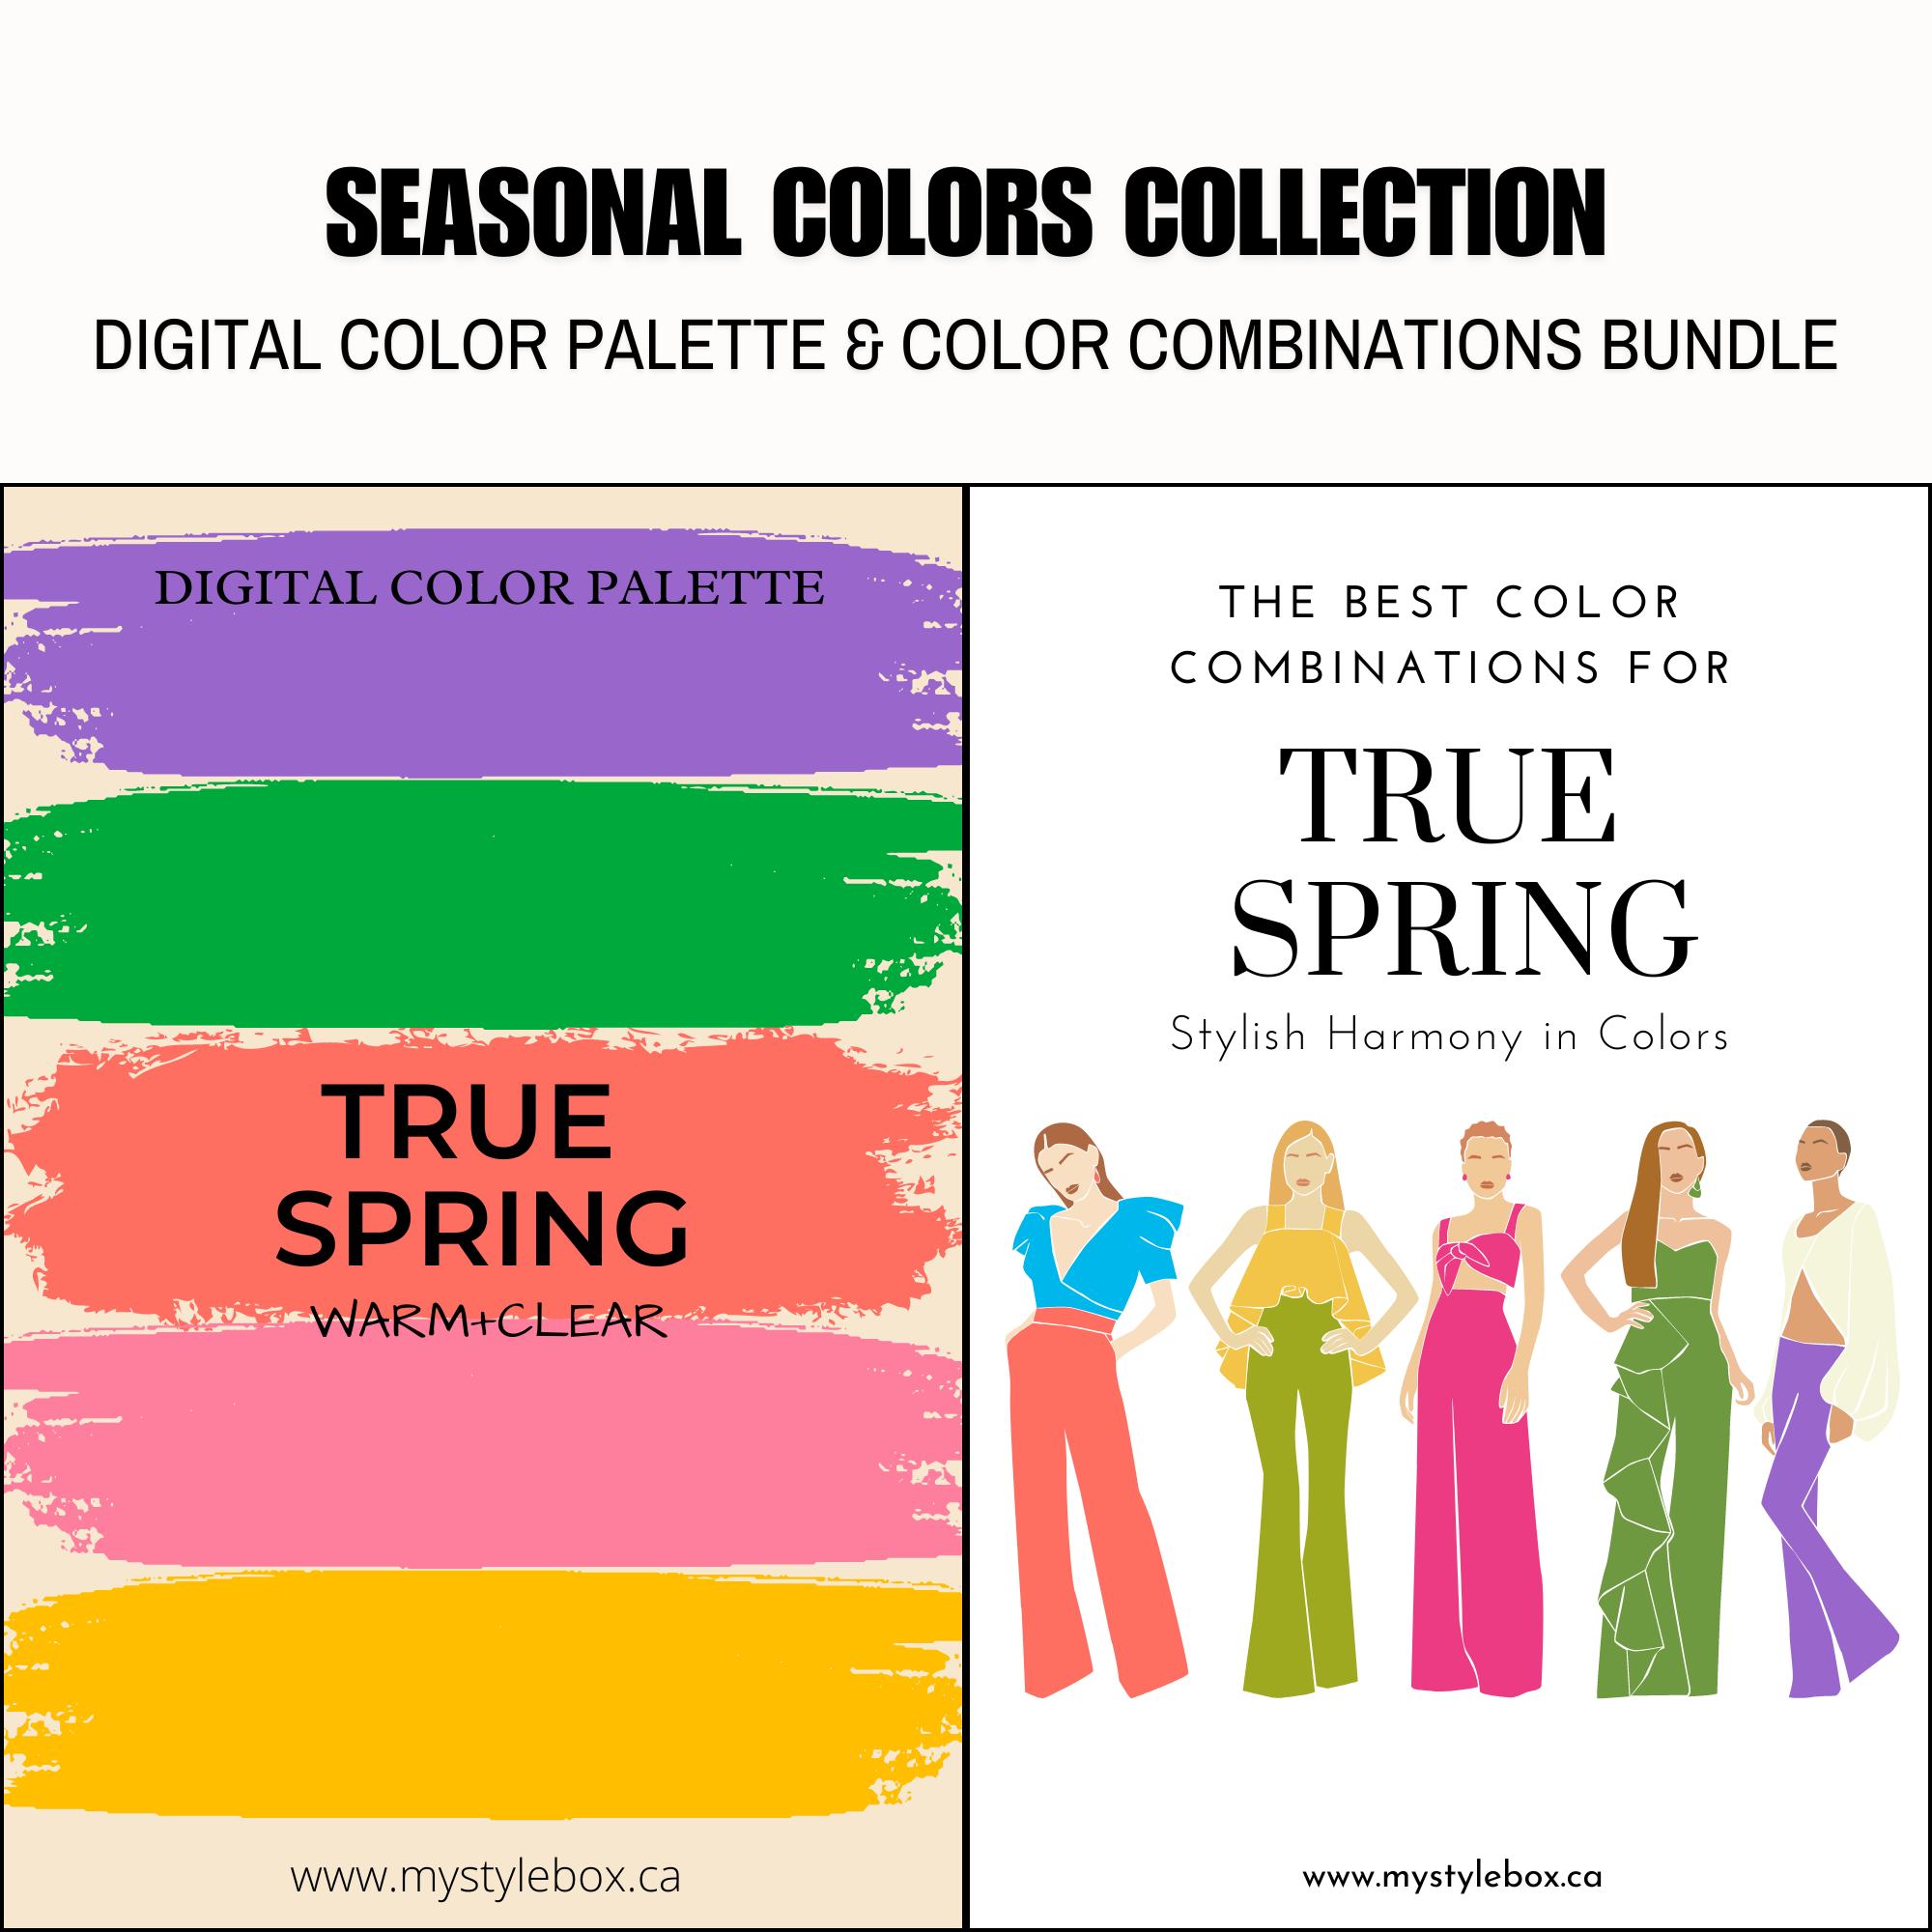 Paquete de paleta de colores digitales y combinaciones de colores True Spring Season